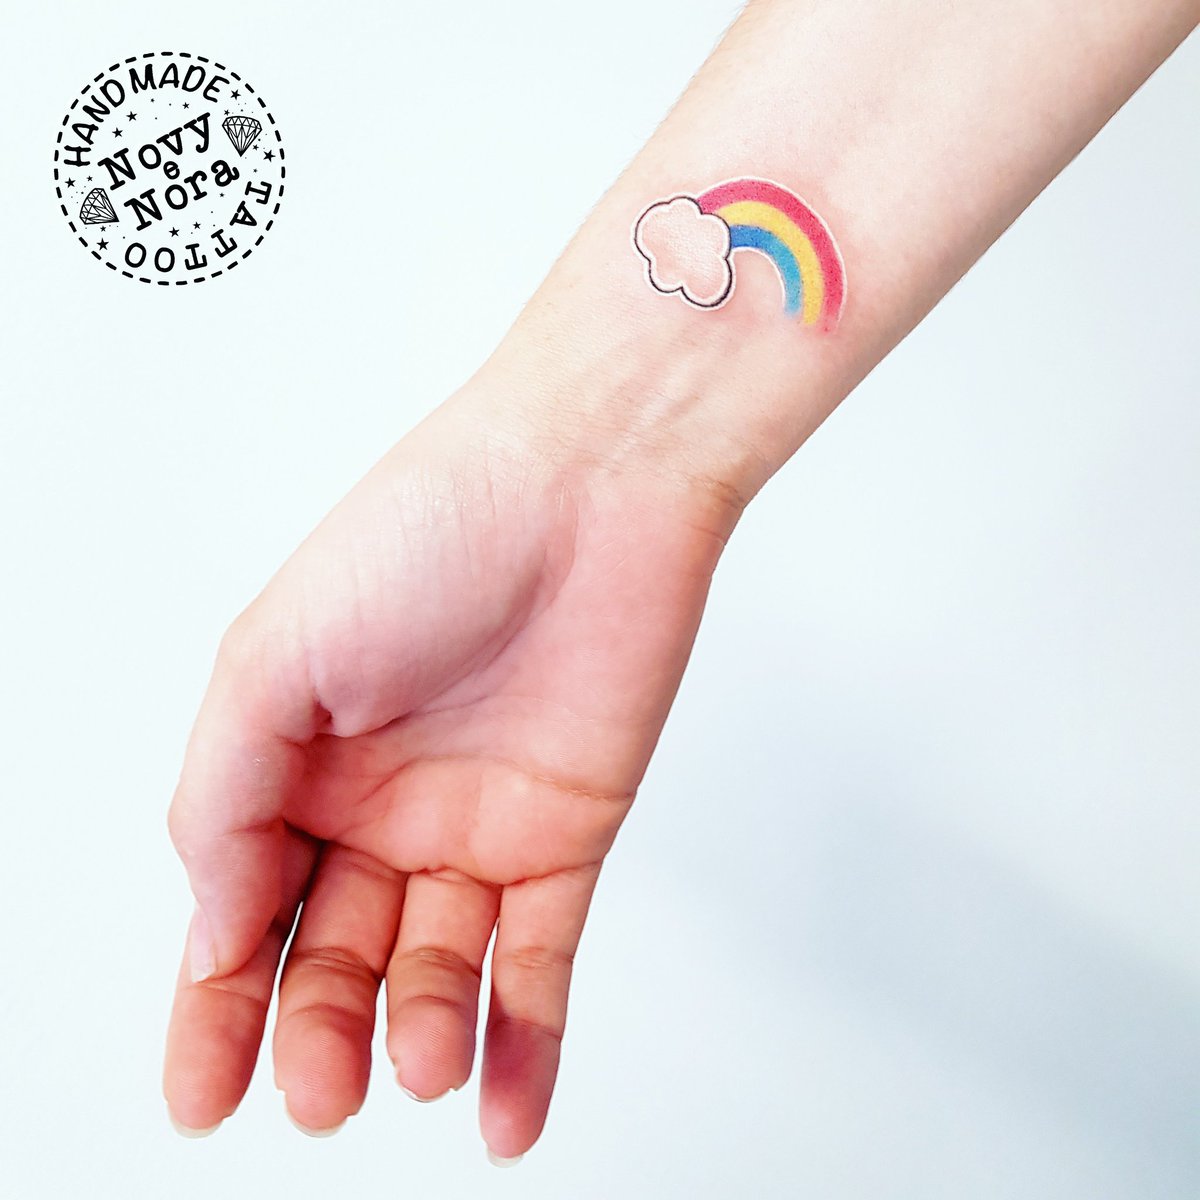 35 Small Rainbow Tattoos in 2021  Small Tattoos  Ideas  Rainbow tattoos  Tattoos Small tattoos